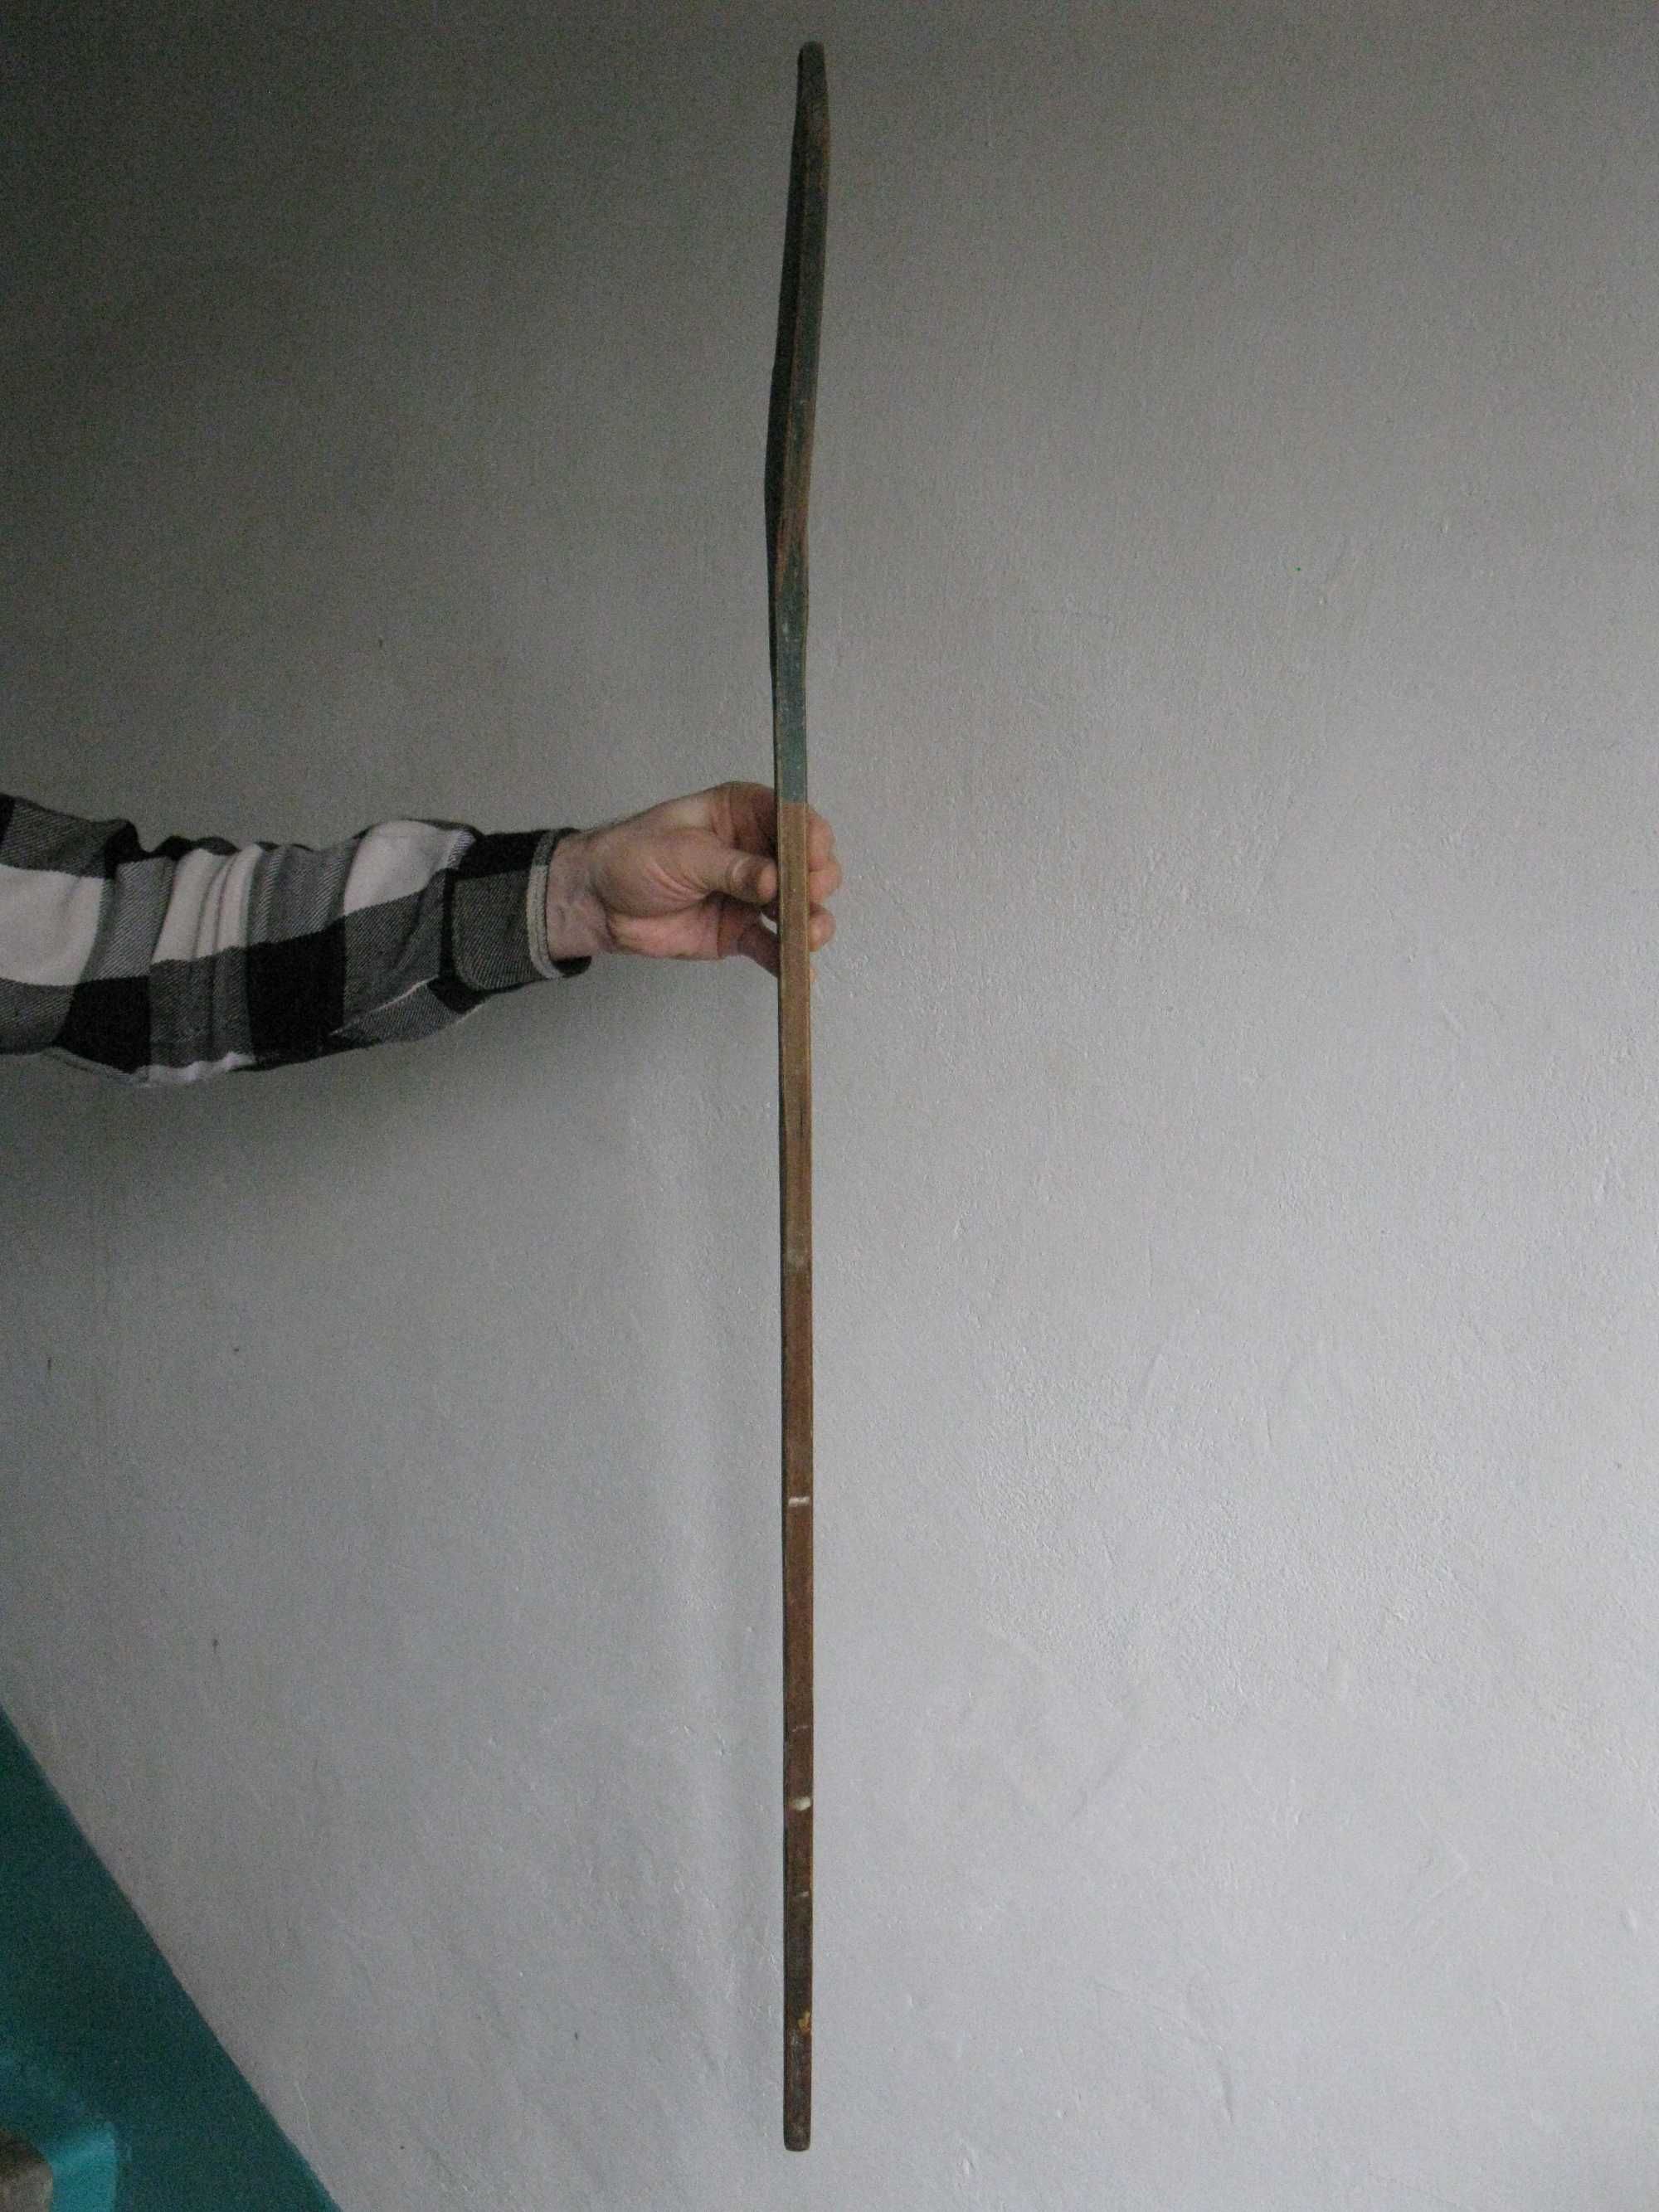 Клюшка для хоккея
Длина ручки до изгиба 94 см